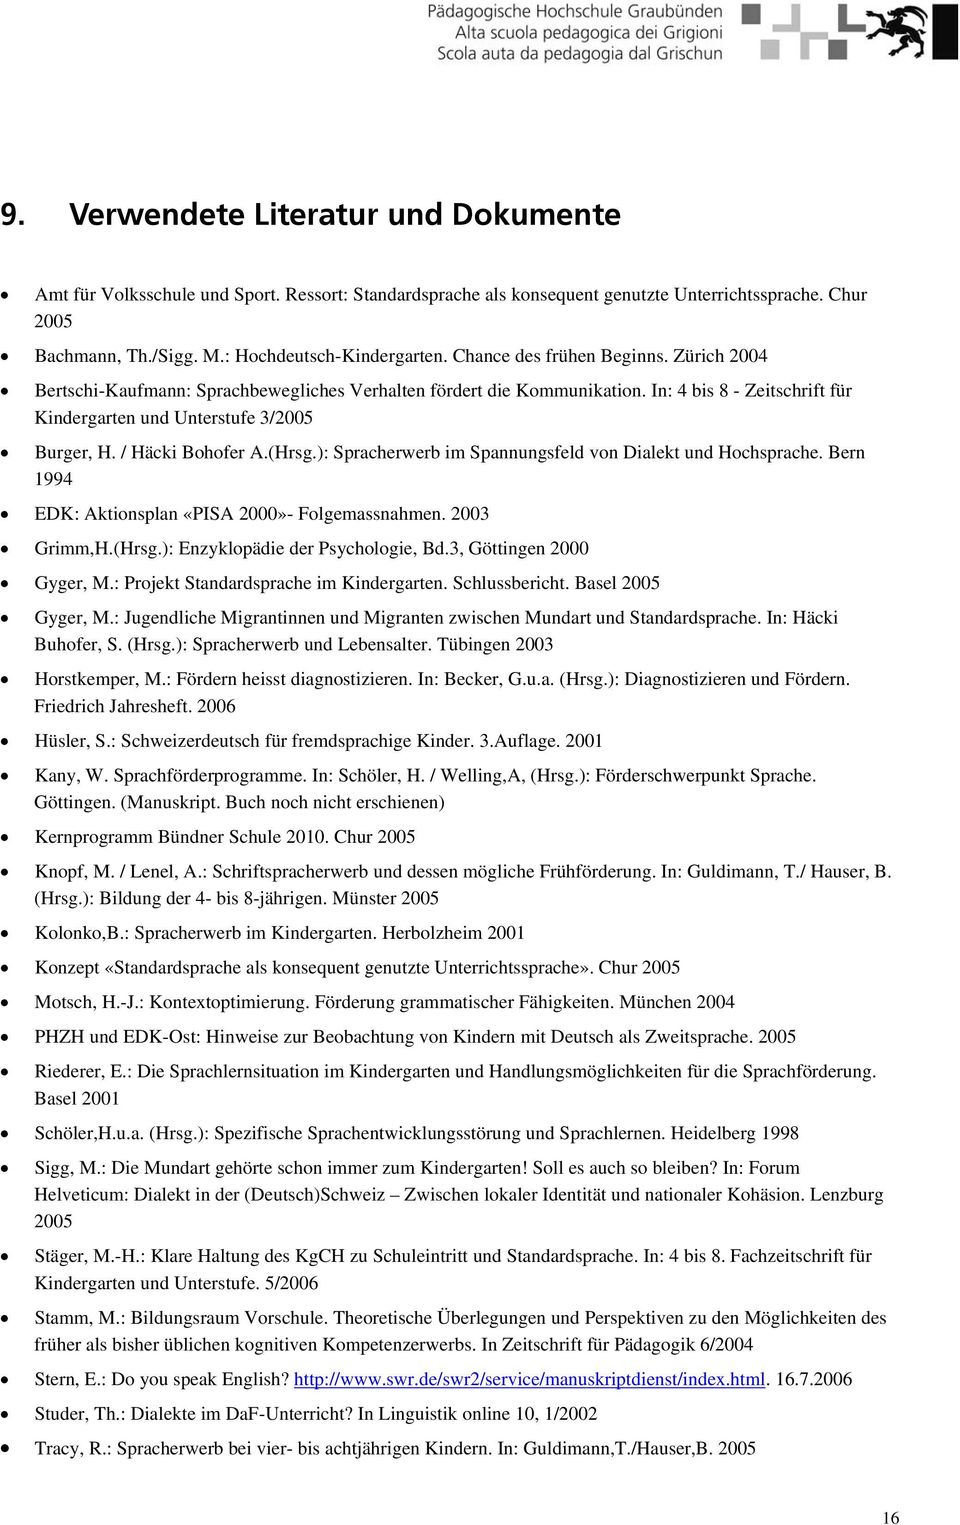 / Häcki Bohofer A.(Hrsg.): Spracherwerb im Spannungsfeld von Dialekt und Hochsprache. Bern 1994 EDK: Aktionsplan «PISA 2000»- Folgemassnahmen. 2003 Grimm,H.(Hrsg.): Enzyklopädie der Psychologie, Bd.